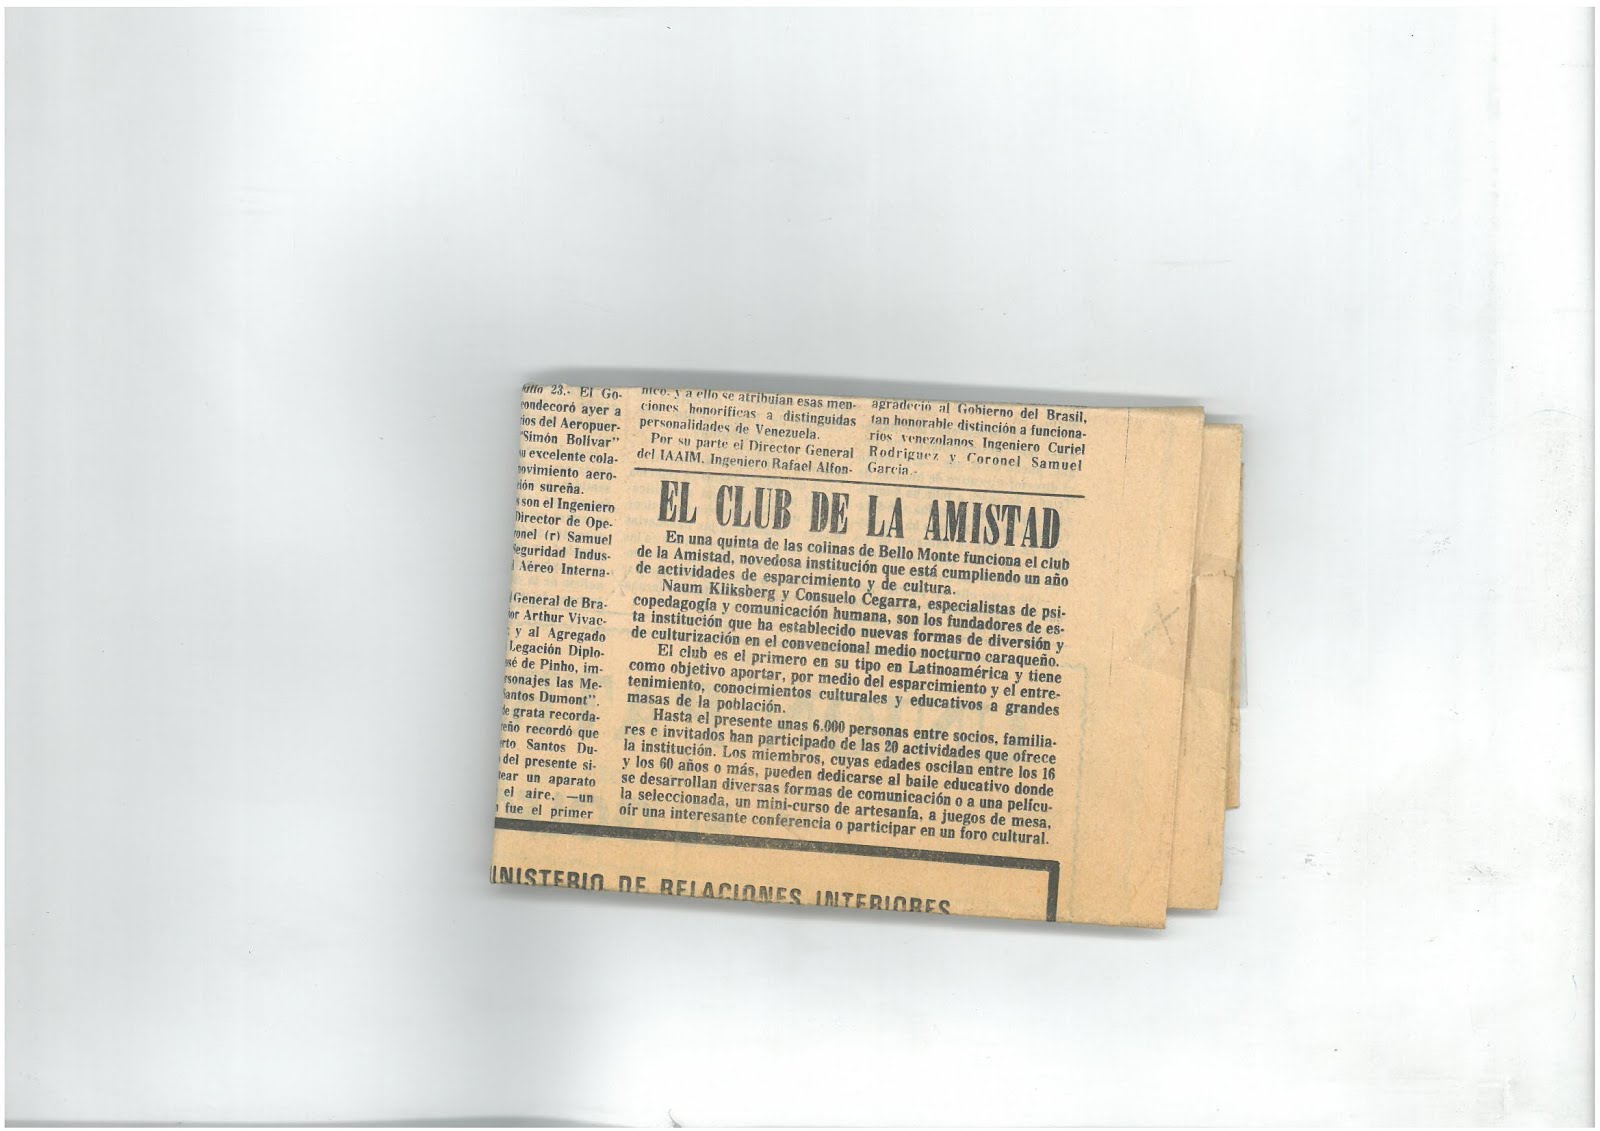 62b -Periódico EL MUNDO, Caracas, 23/07/1980. Noticia sobre el CLUB CULTURA Y AMISTAD.